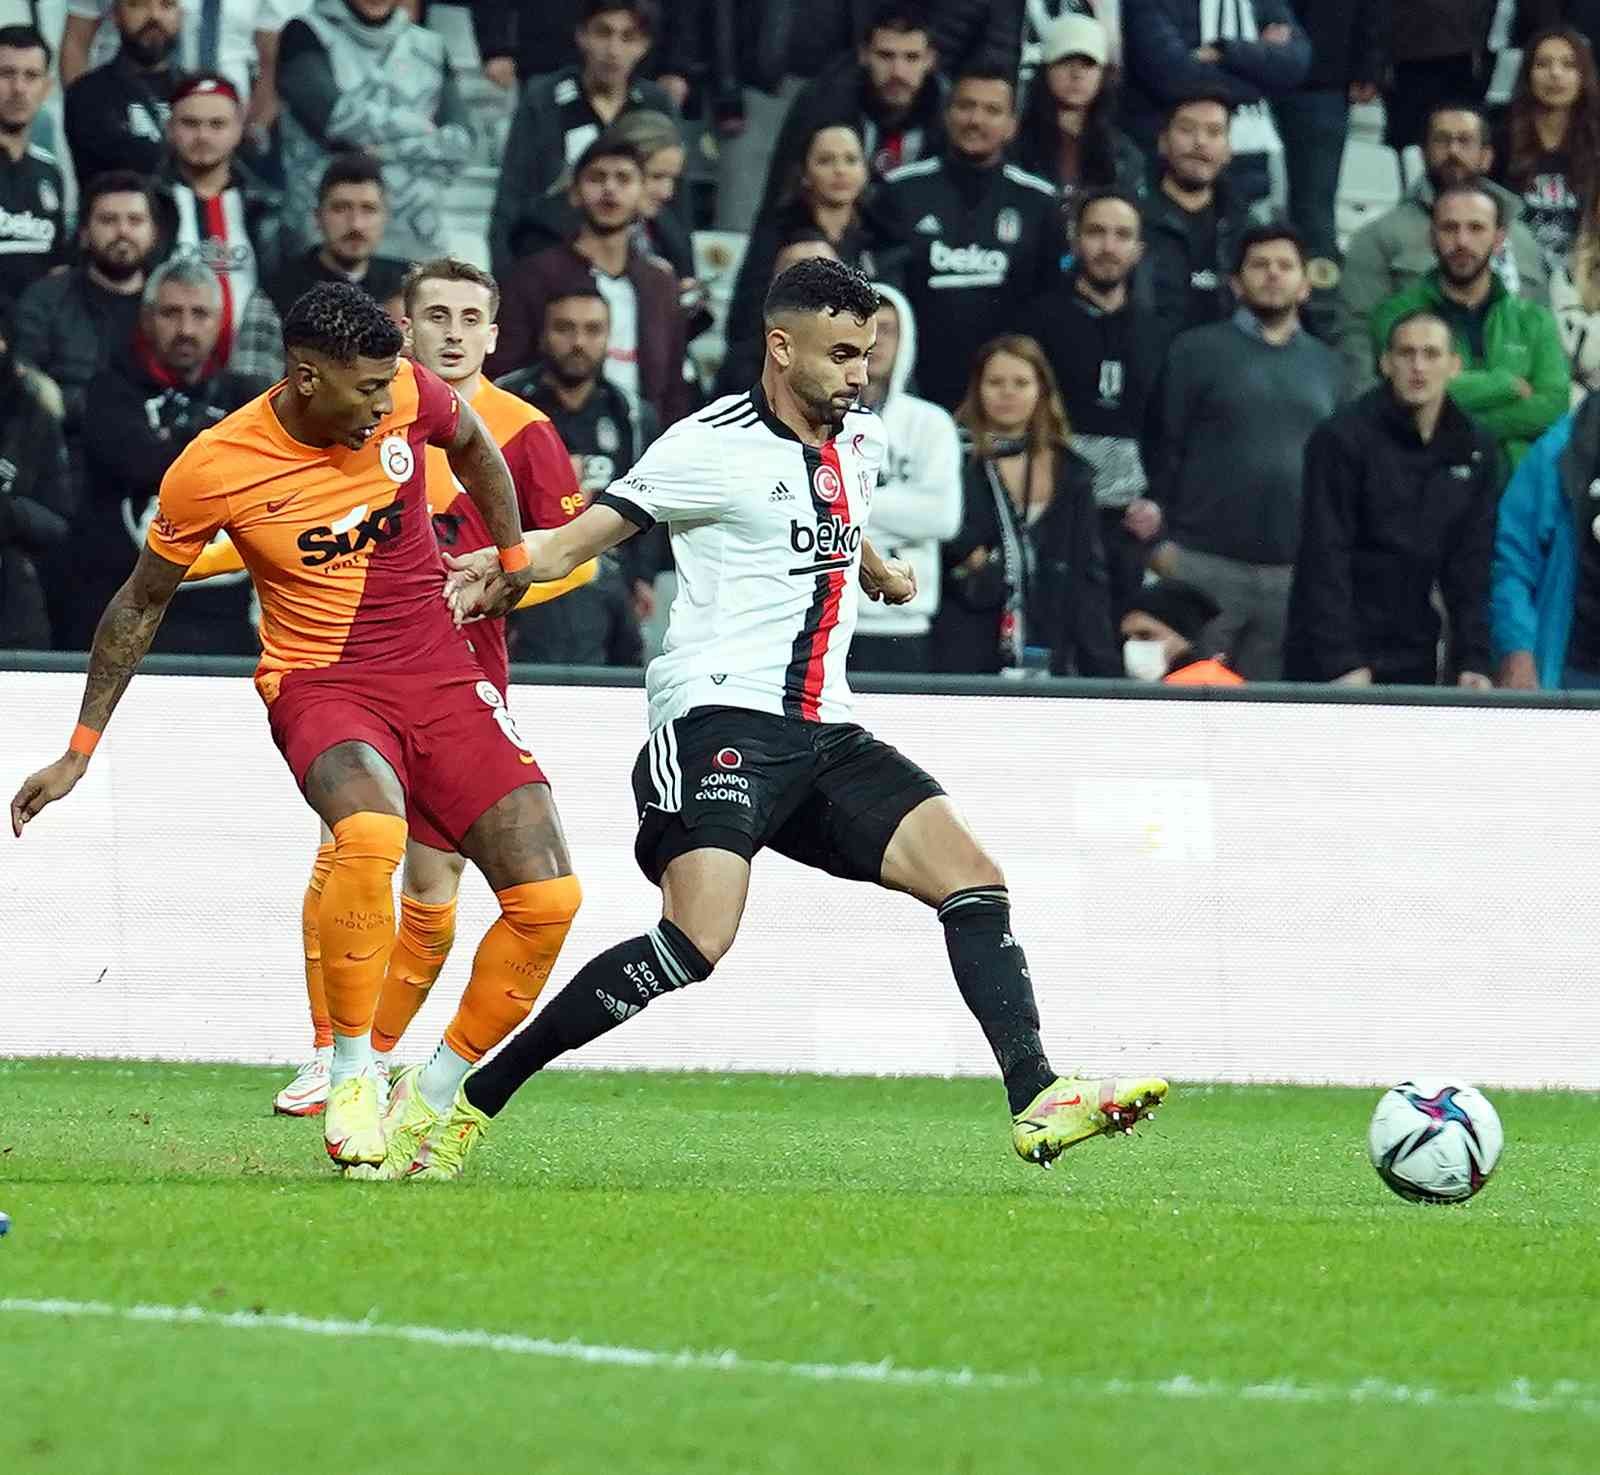 Süper Lig: Beşiktaş: 2 - Galatasaray: 1 (Maç sonucu) #istanbul